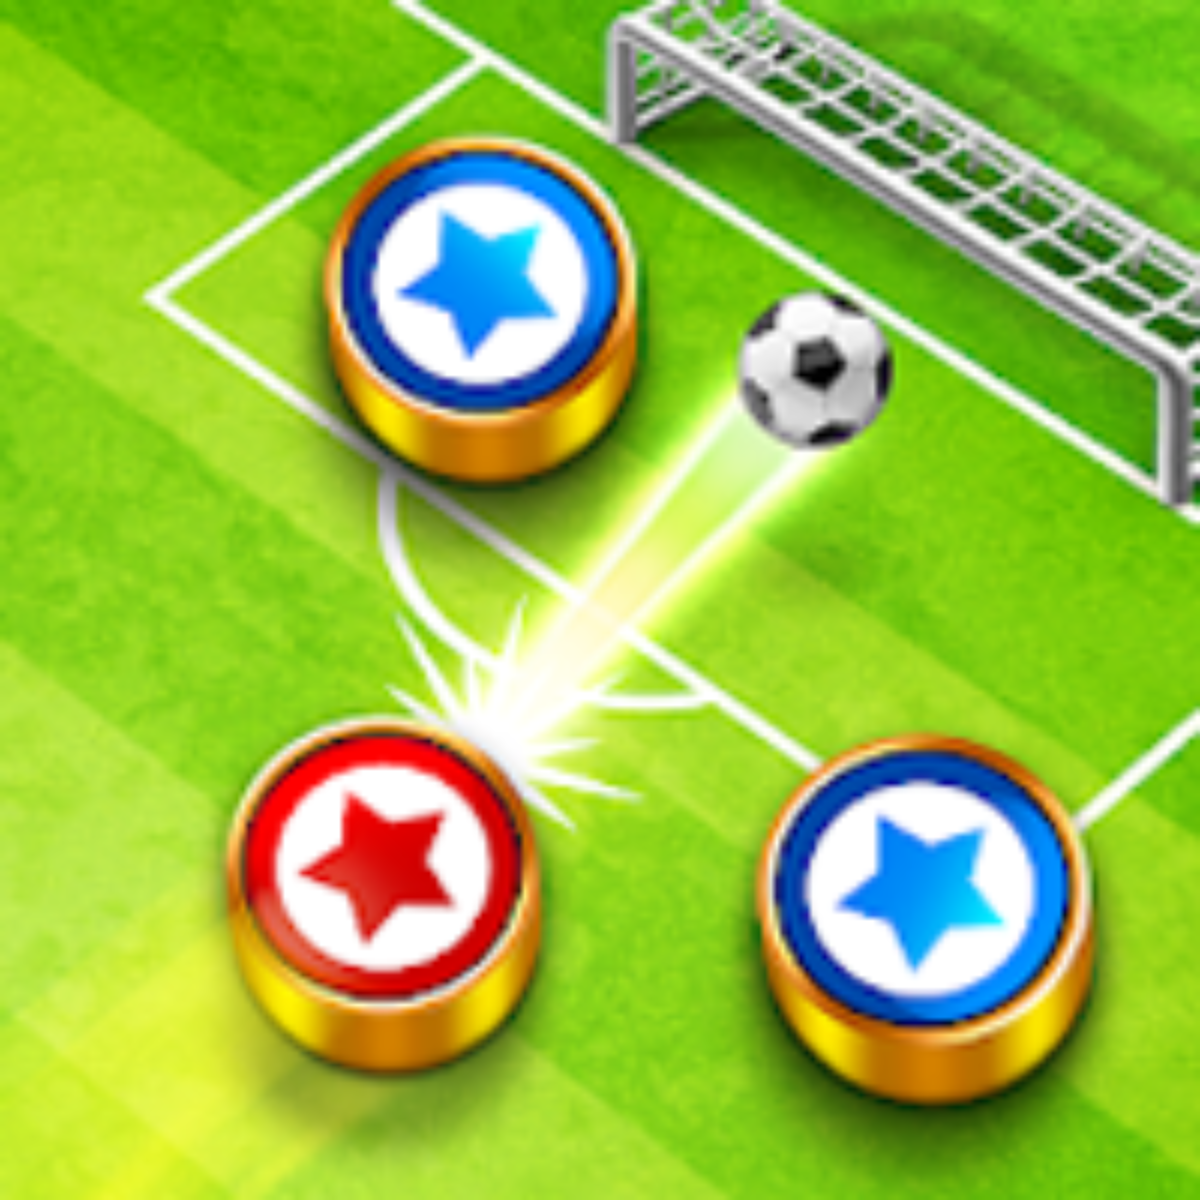 Soccer Star 23 Super Football v1.23.1 Apk Mod [Dinheiro Infinito]